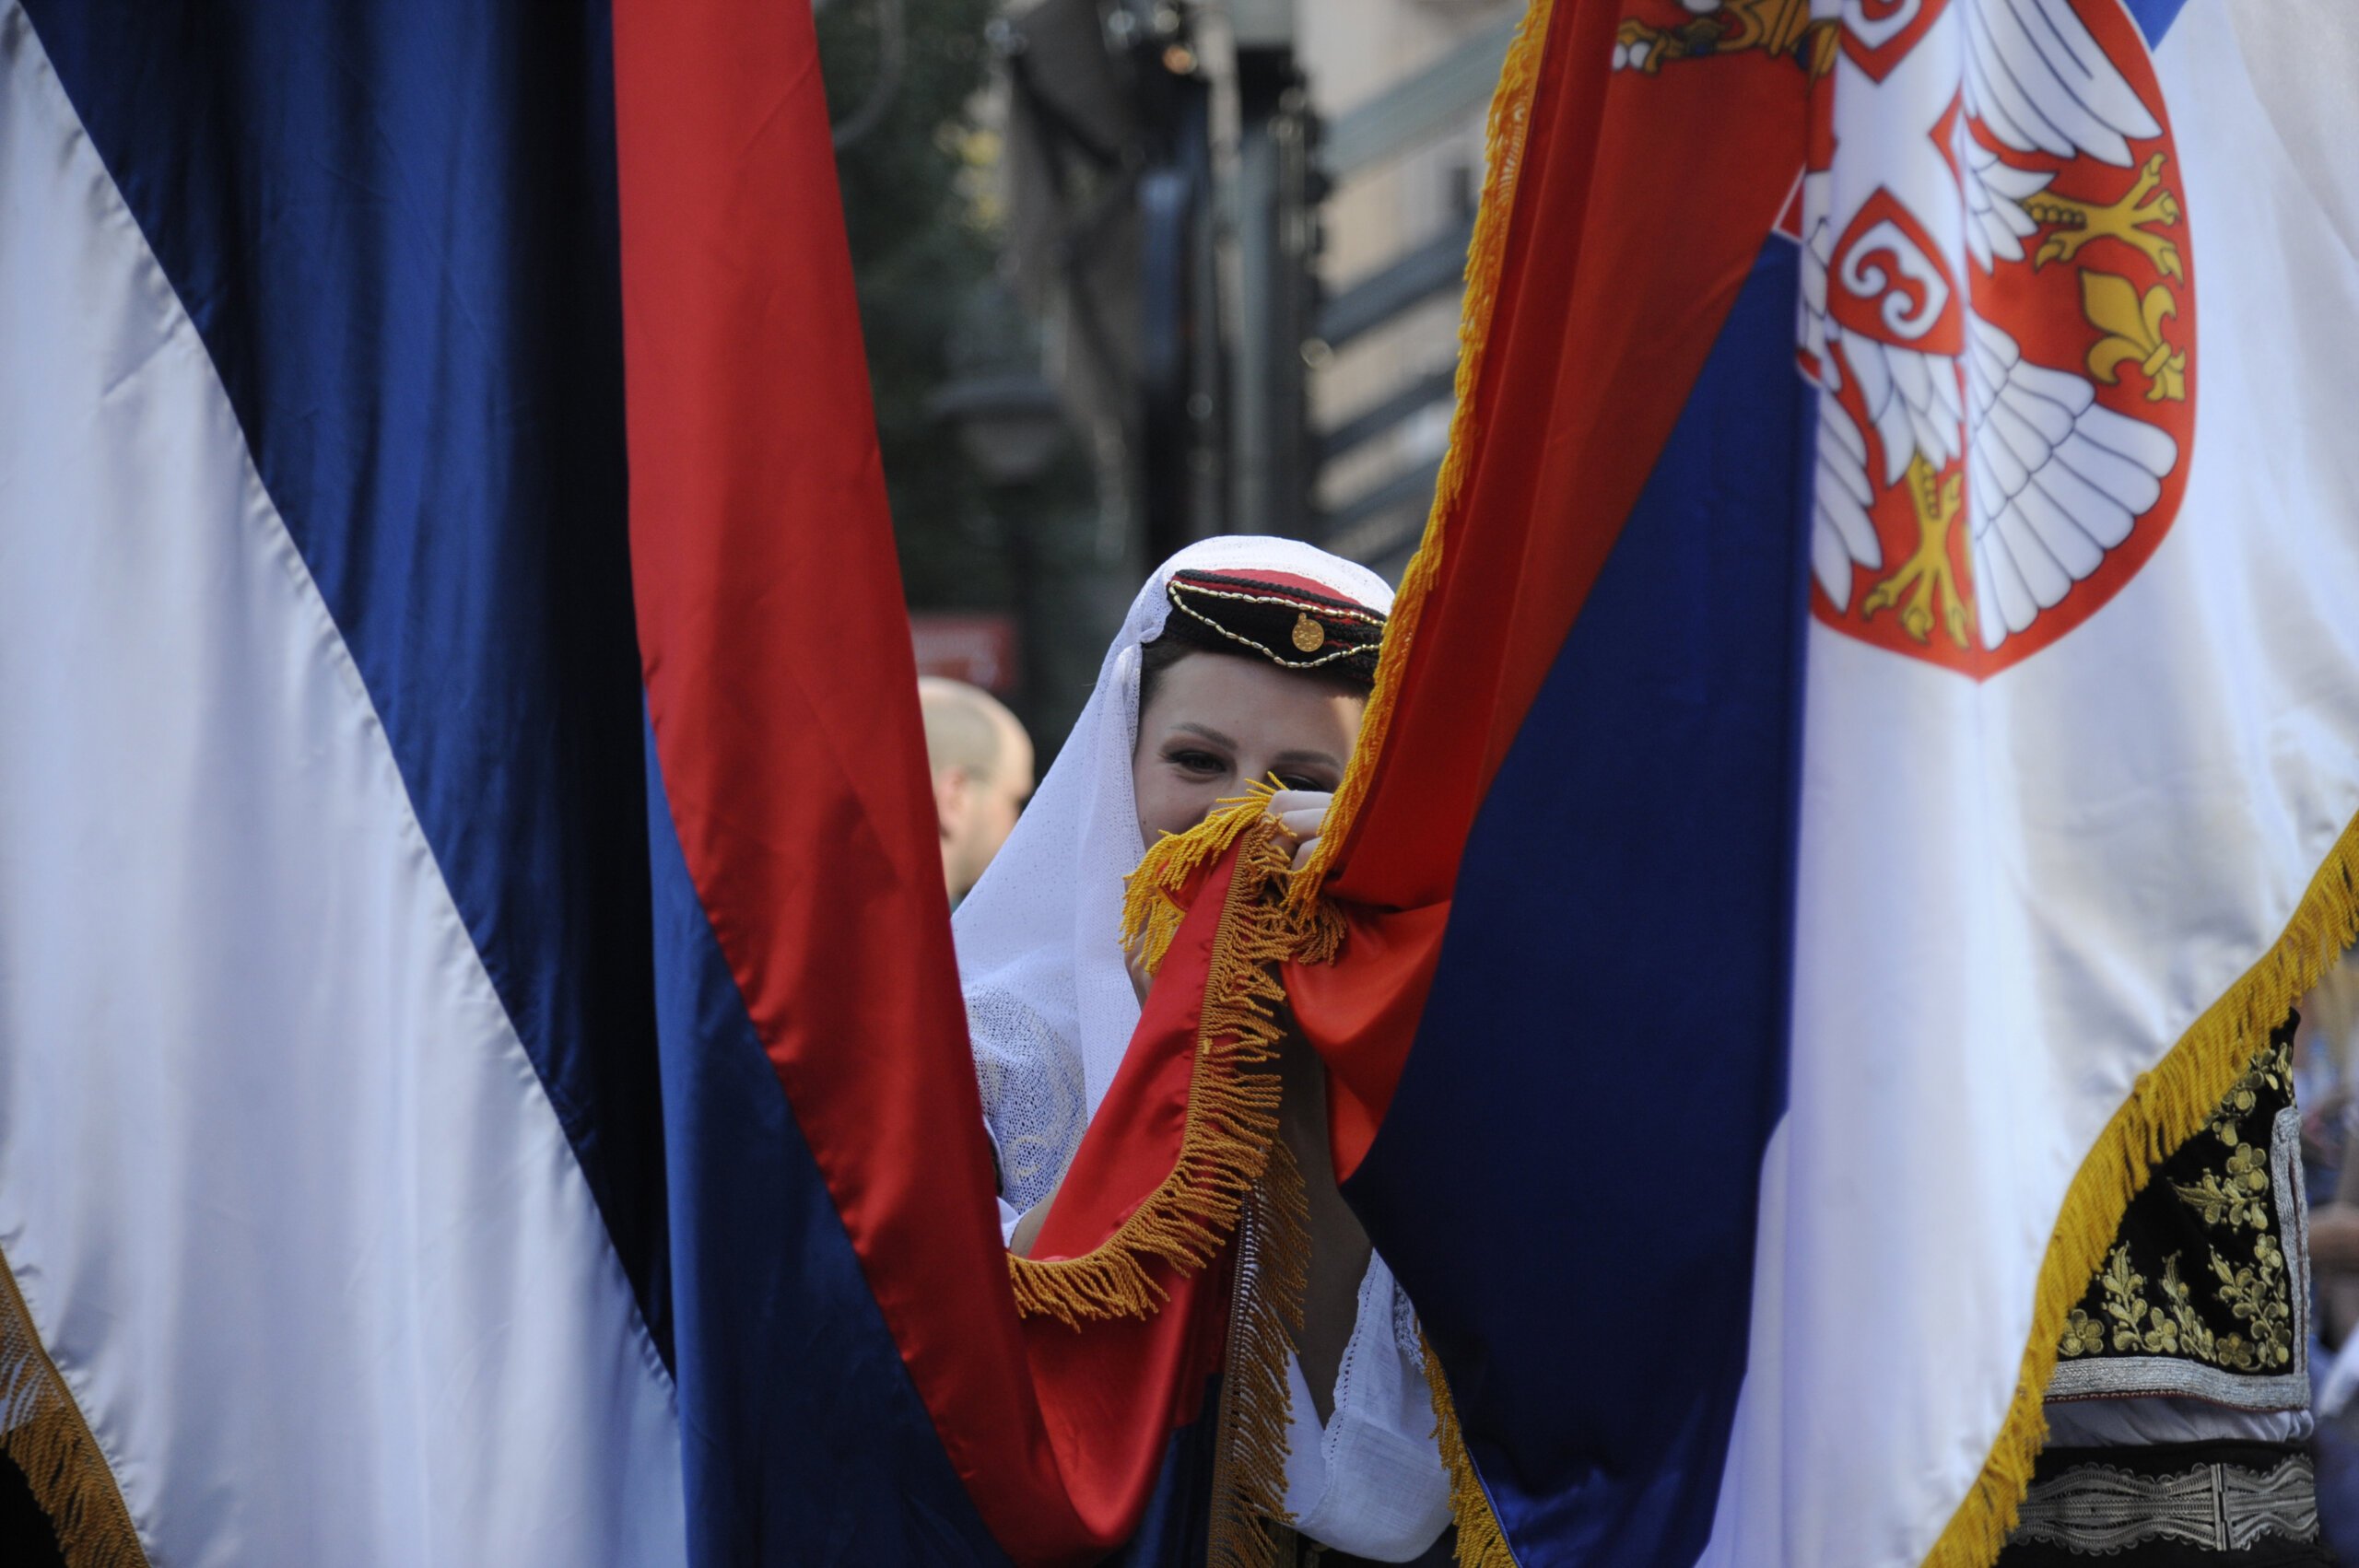 (FOTO) Kako je izgledala manifestacija "Jedan narod, jedan sabor - Srbija i Srpska" na Trgu republike u fotografijama? 17